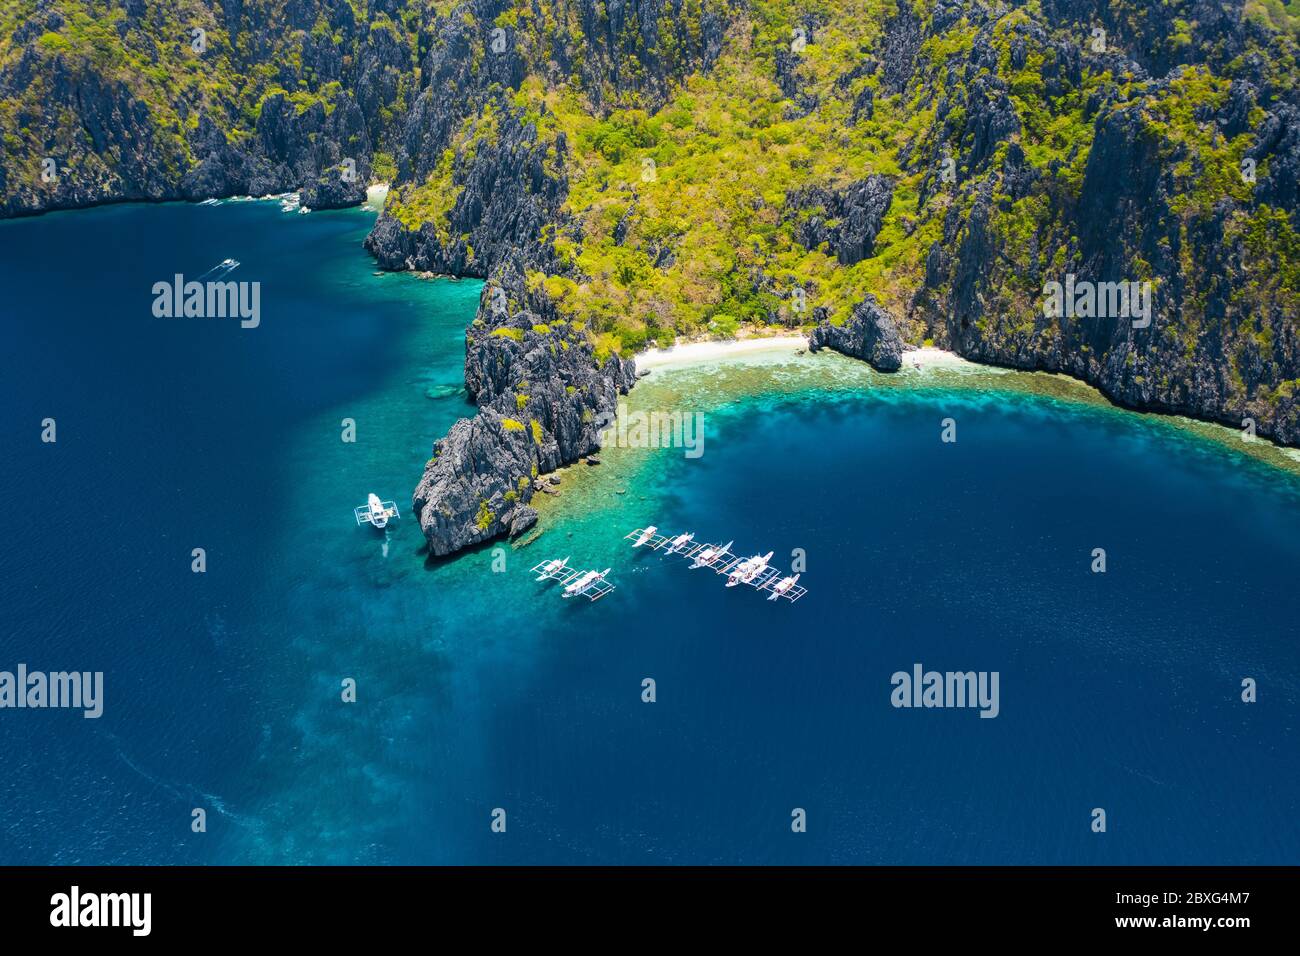 Vista aérea de barcos blancos en mar abierto cerca de la isla tropical de Miniloc. El Nido, isla Palawan, Filipinas Foto de stock